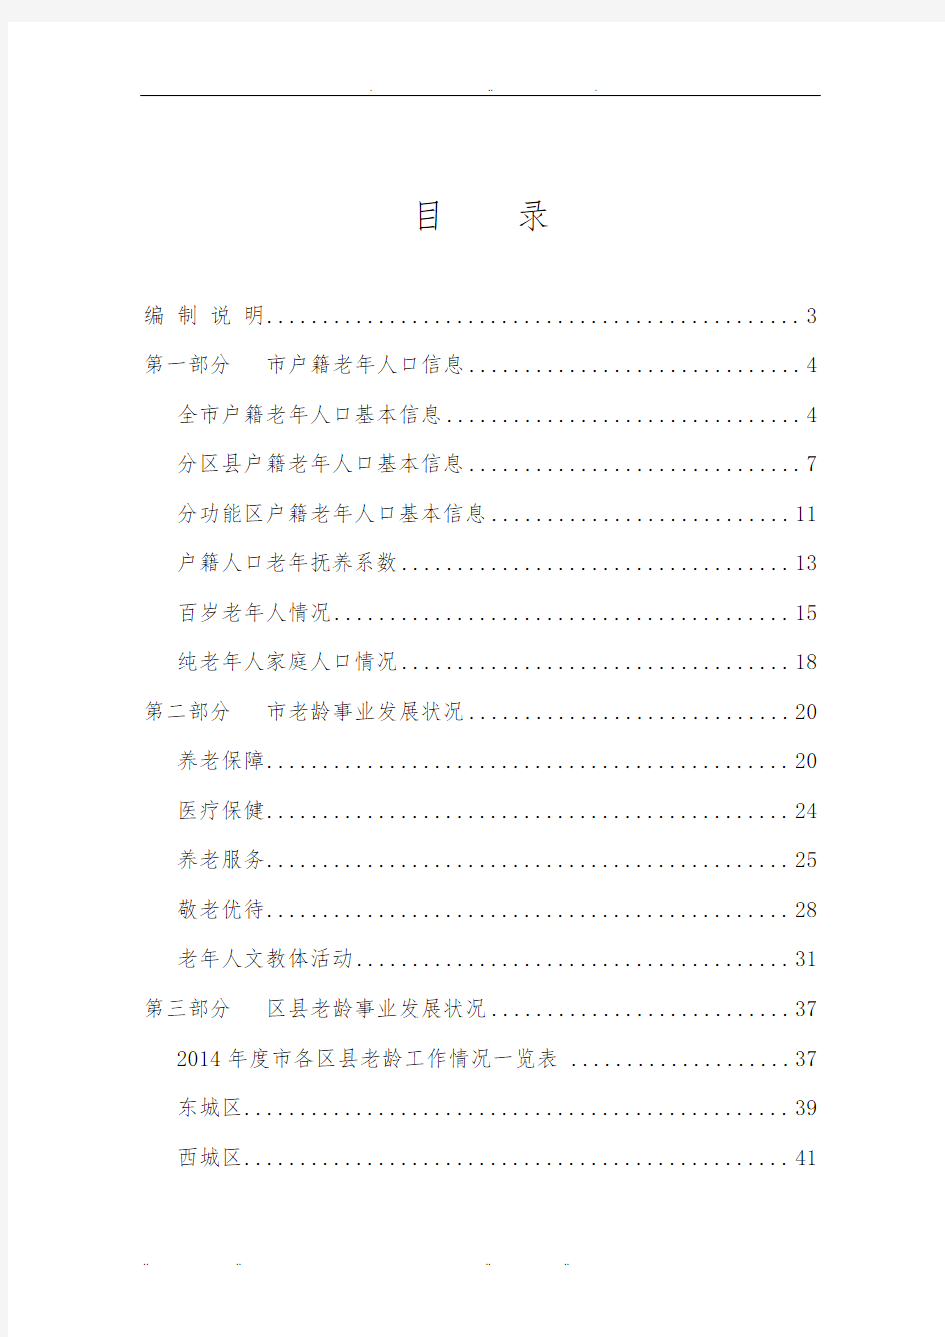 北京市2014年老年人口信息和老龄事业发展状况报告